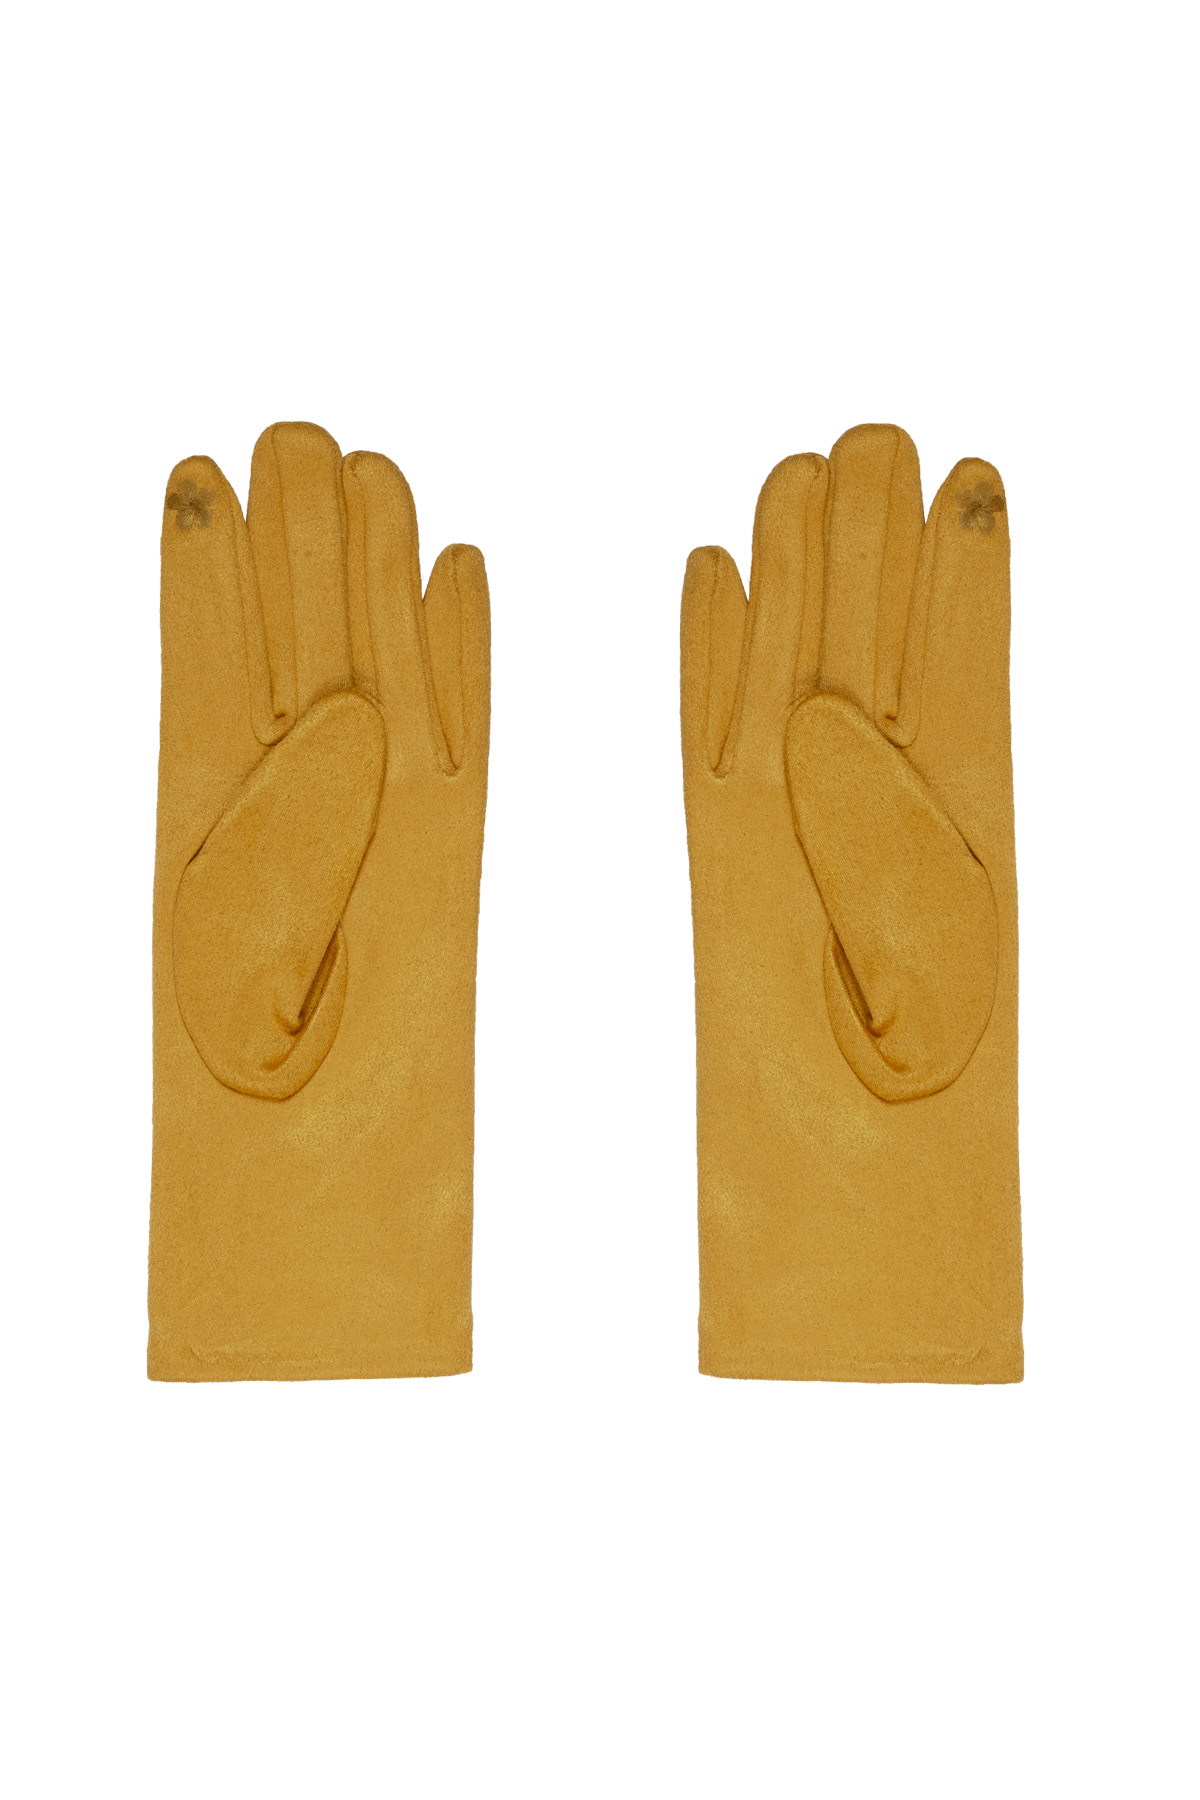 Handschuhe Steine - gelb h5 Bild3